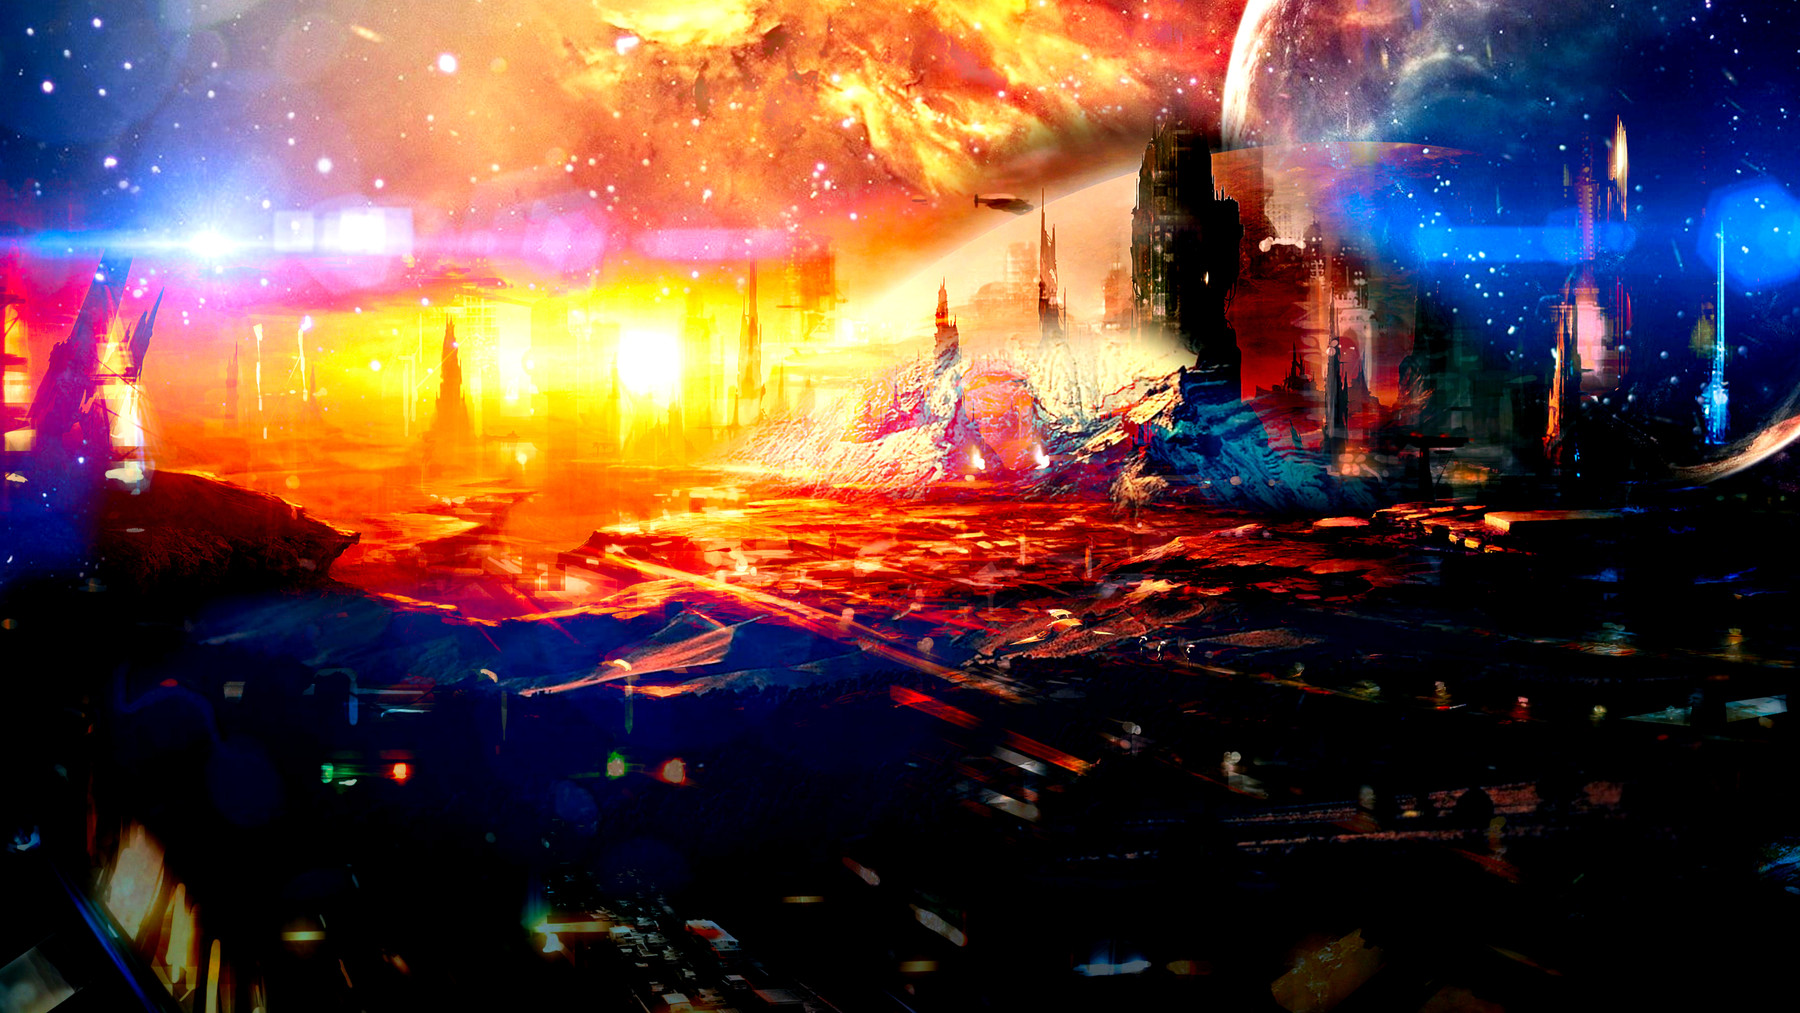 ArtStation - Concept Art - Science Fiction - landscape - sci-fi ...